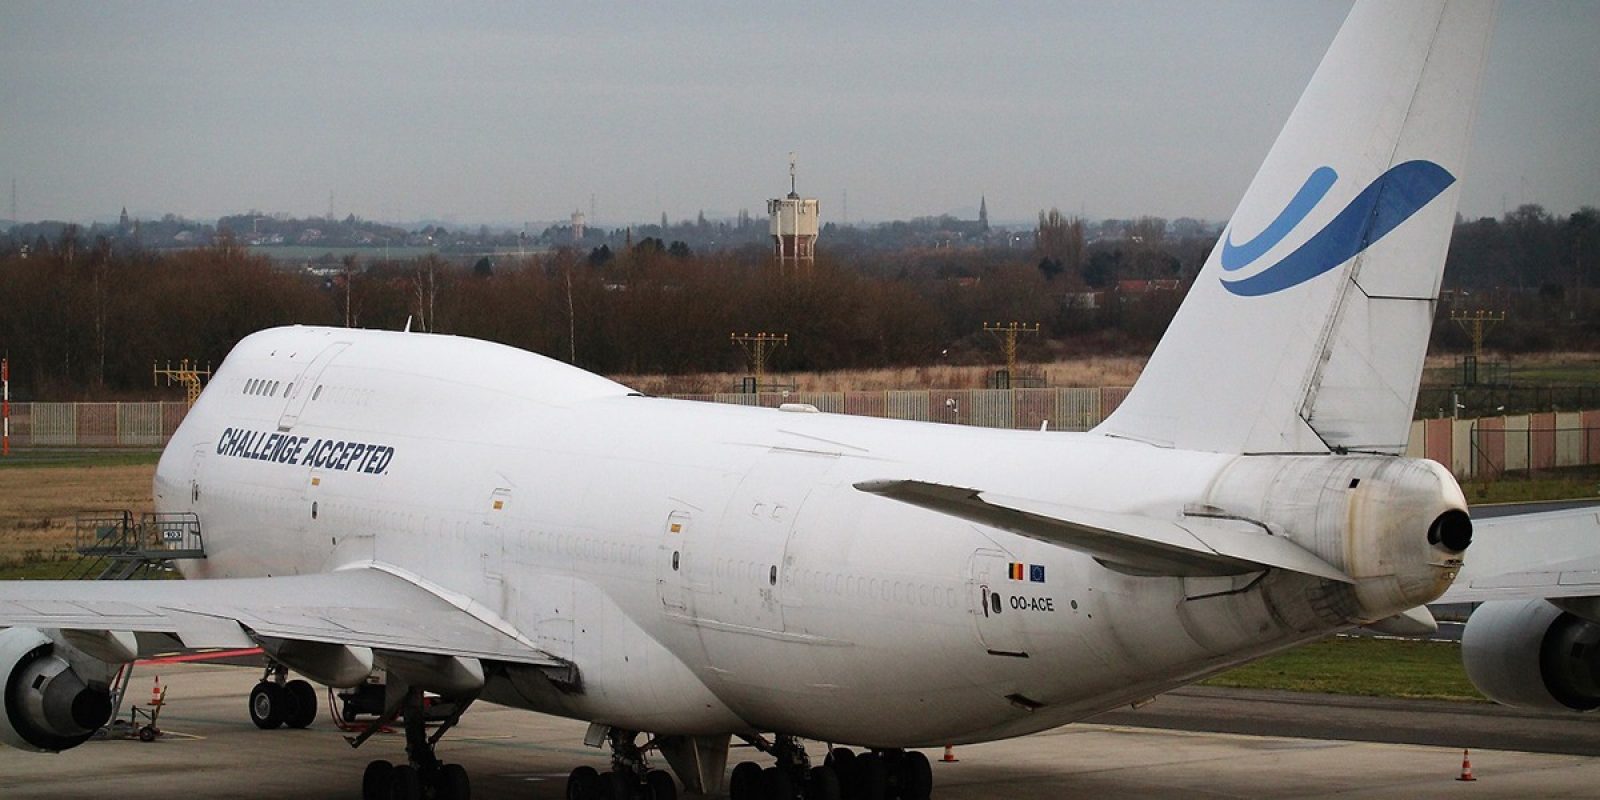 Le premier Boeing 747 de la jeune compagnie aérienne cargo belge ACE Belgian Freighters a été livré il y a tout juste un an. Immatriculé OO-ACE, c’est un 747-412 construit initialement en version passagers, et qui a fait l’objet d’une conversion en cargo.